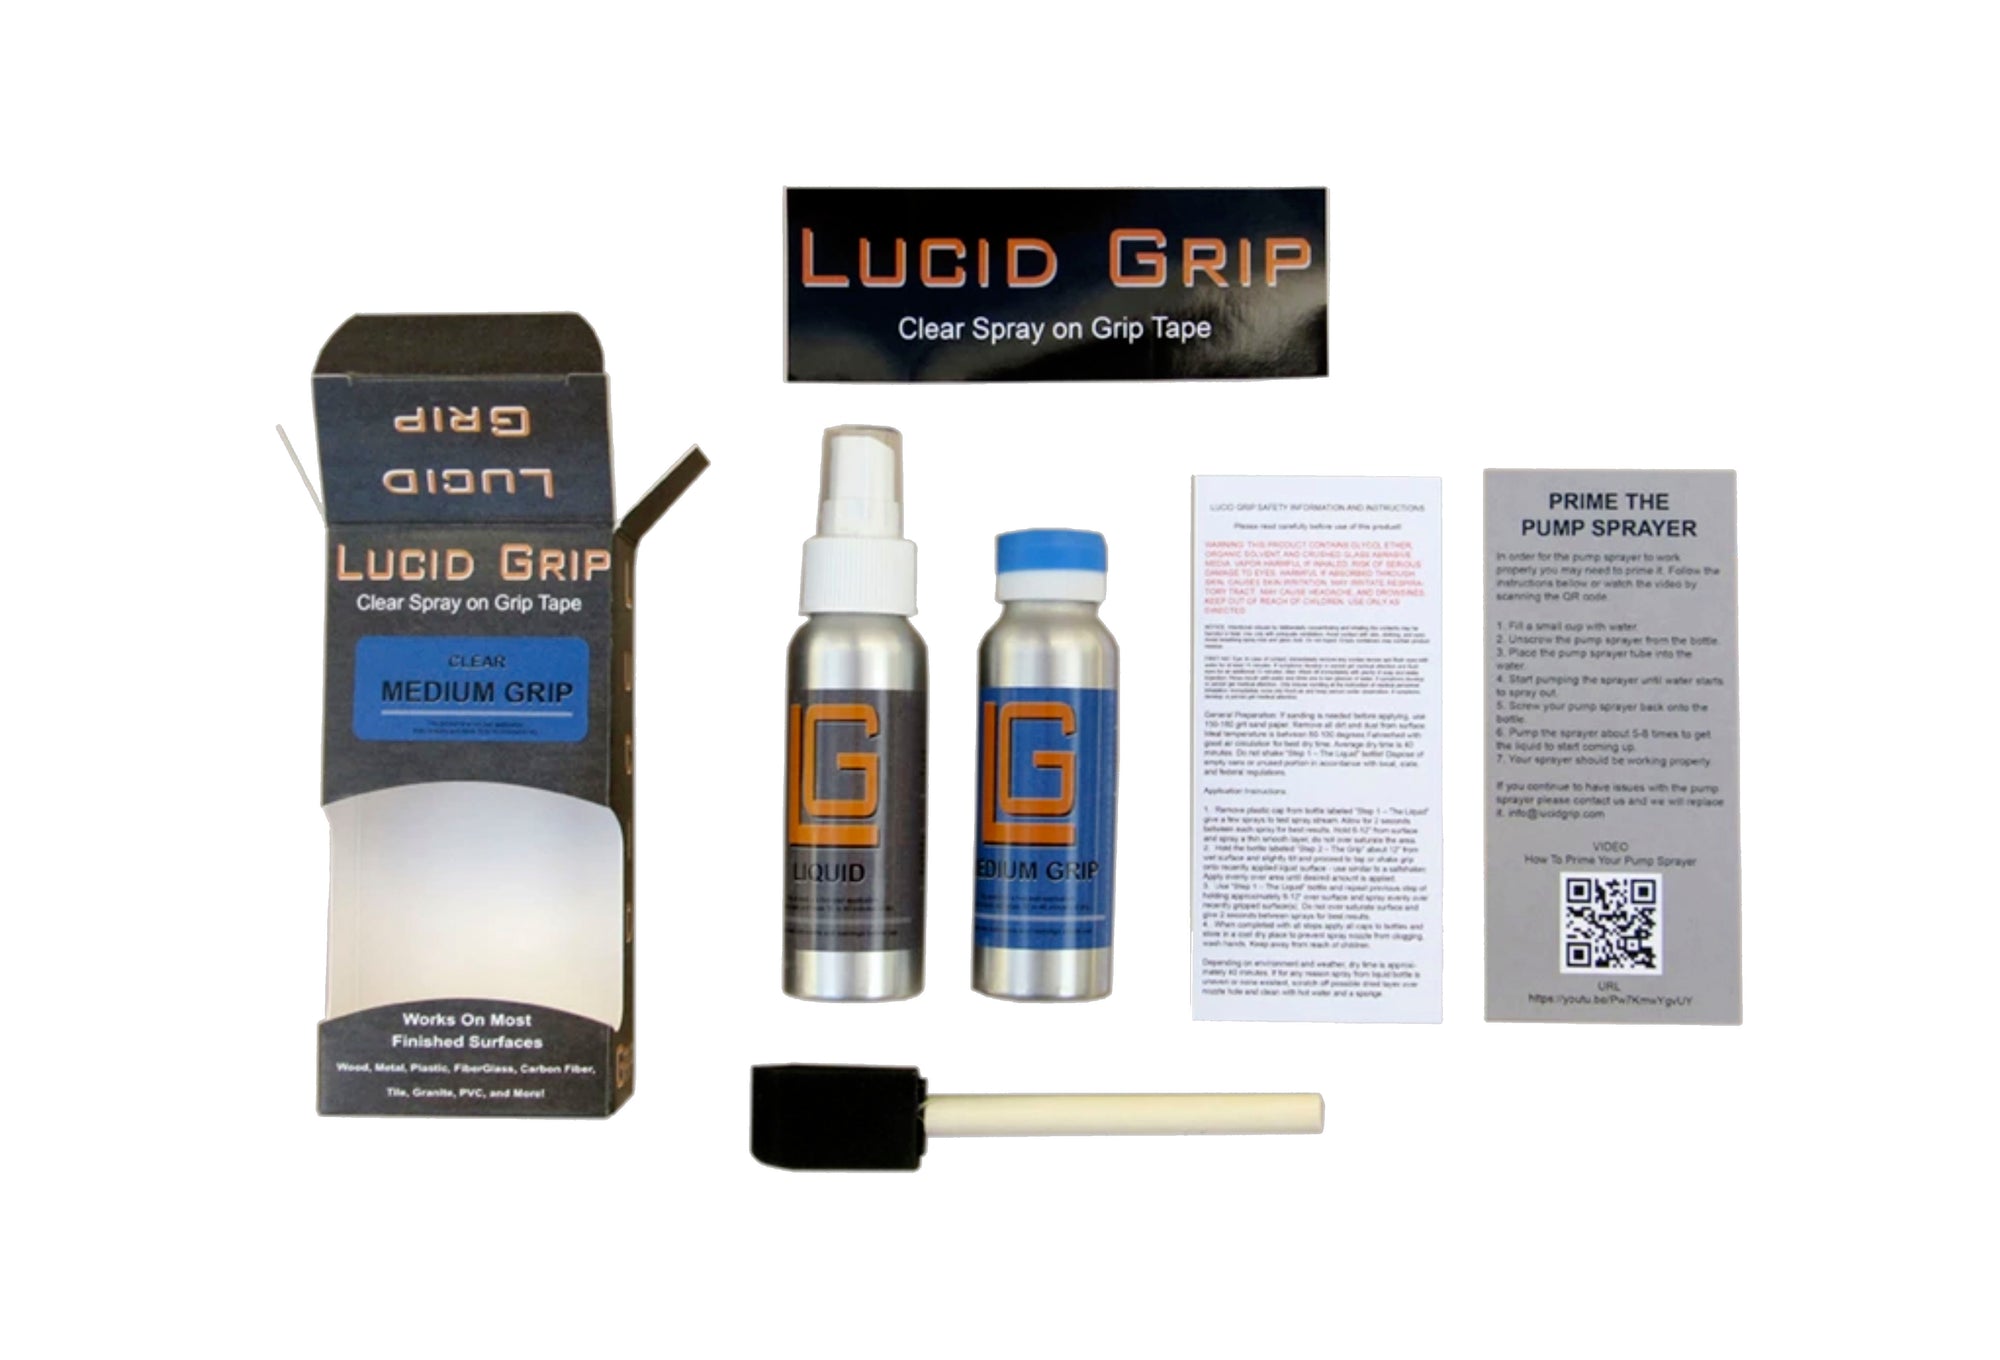 Spray Limpiador y Grip Tape Transparente - Lucid Grip